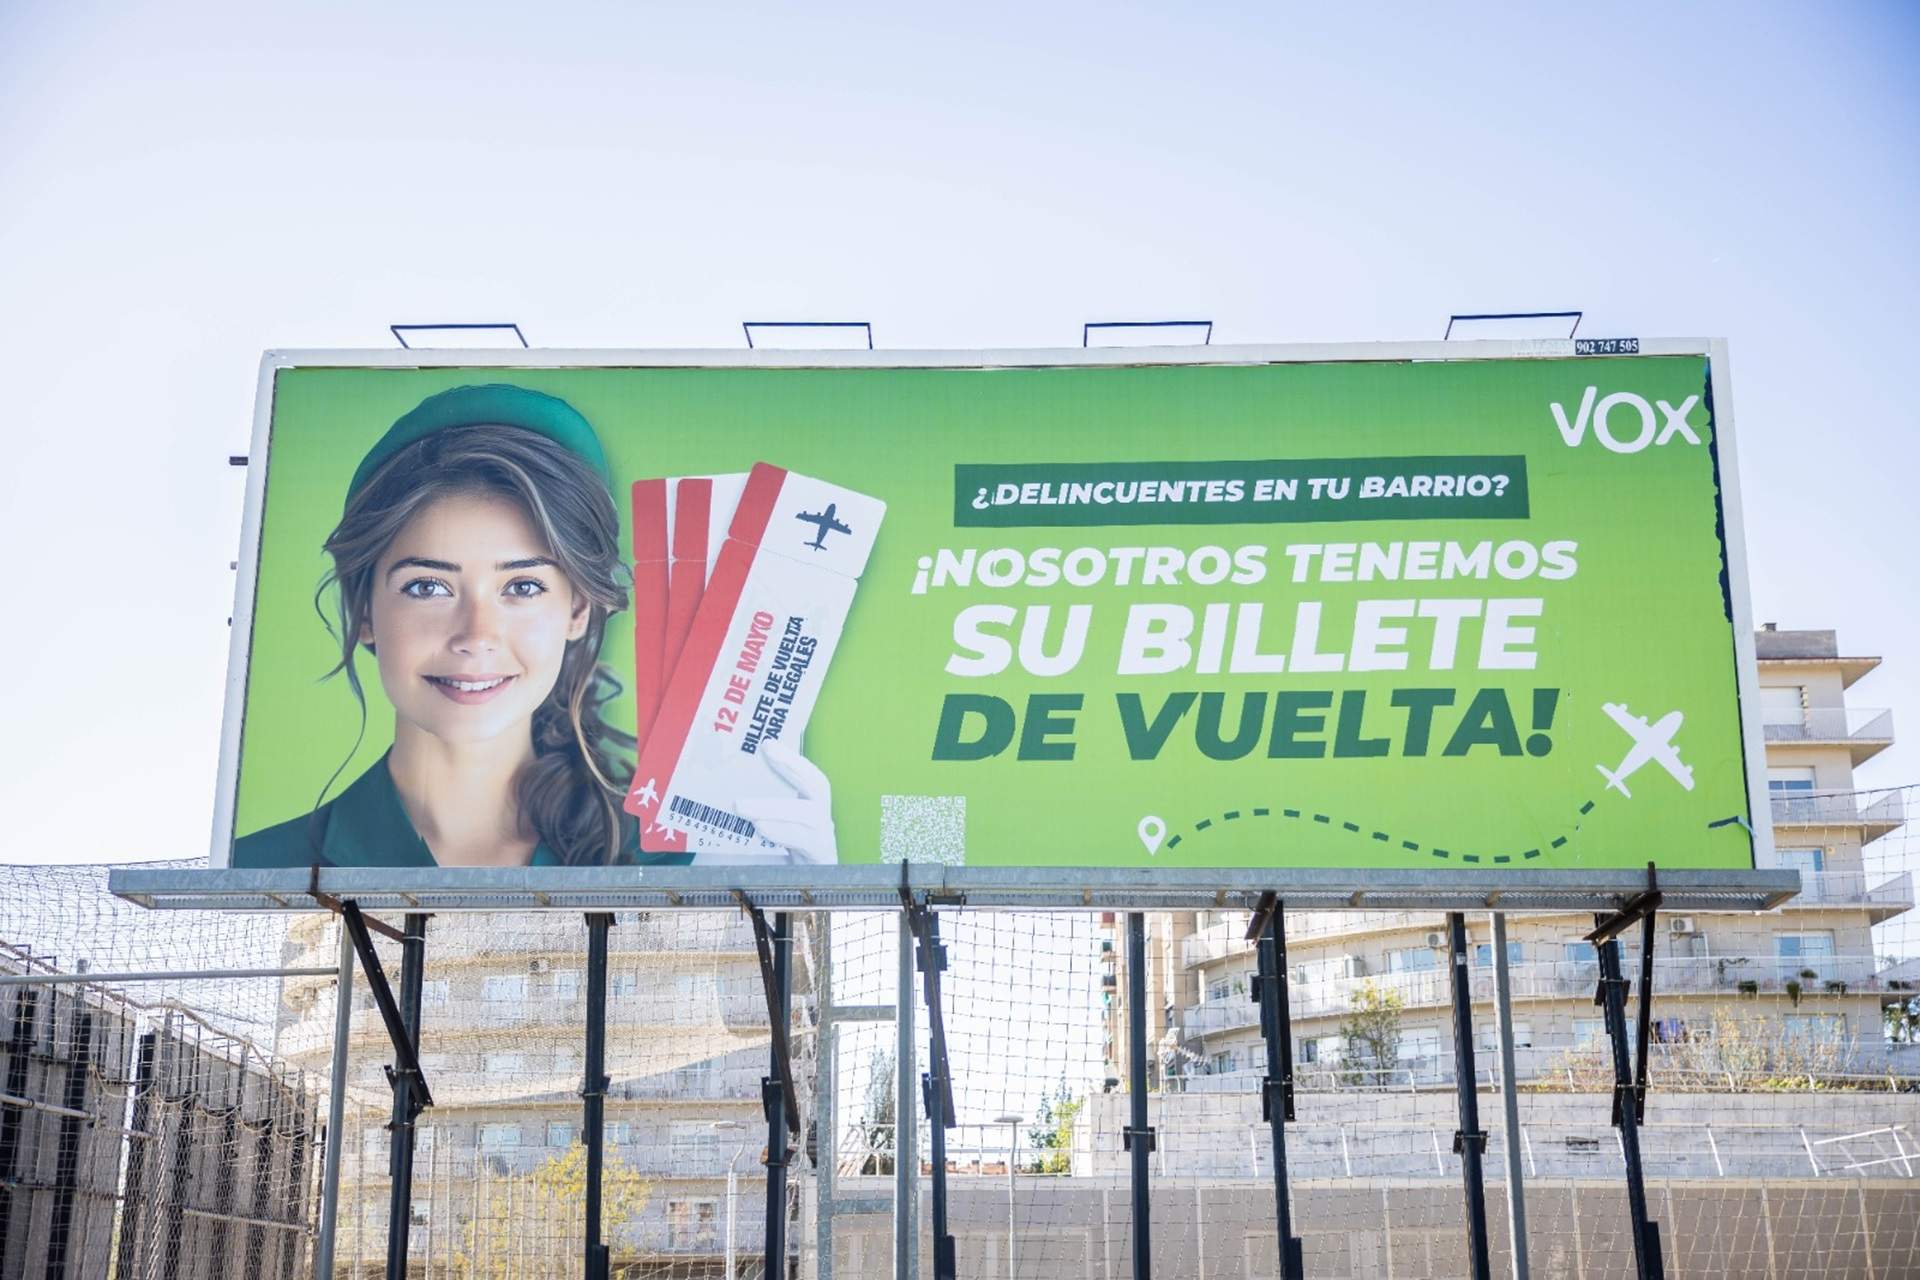 La Junta Electoral obliga Vox a retirar els cartells de campanya contra els immigrants